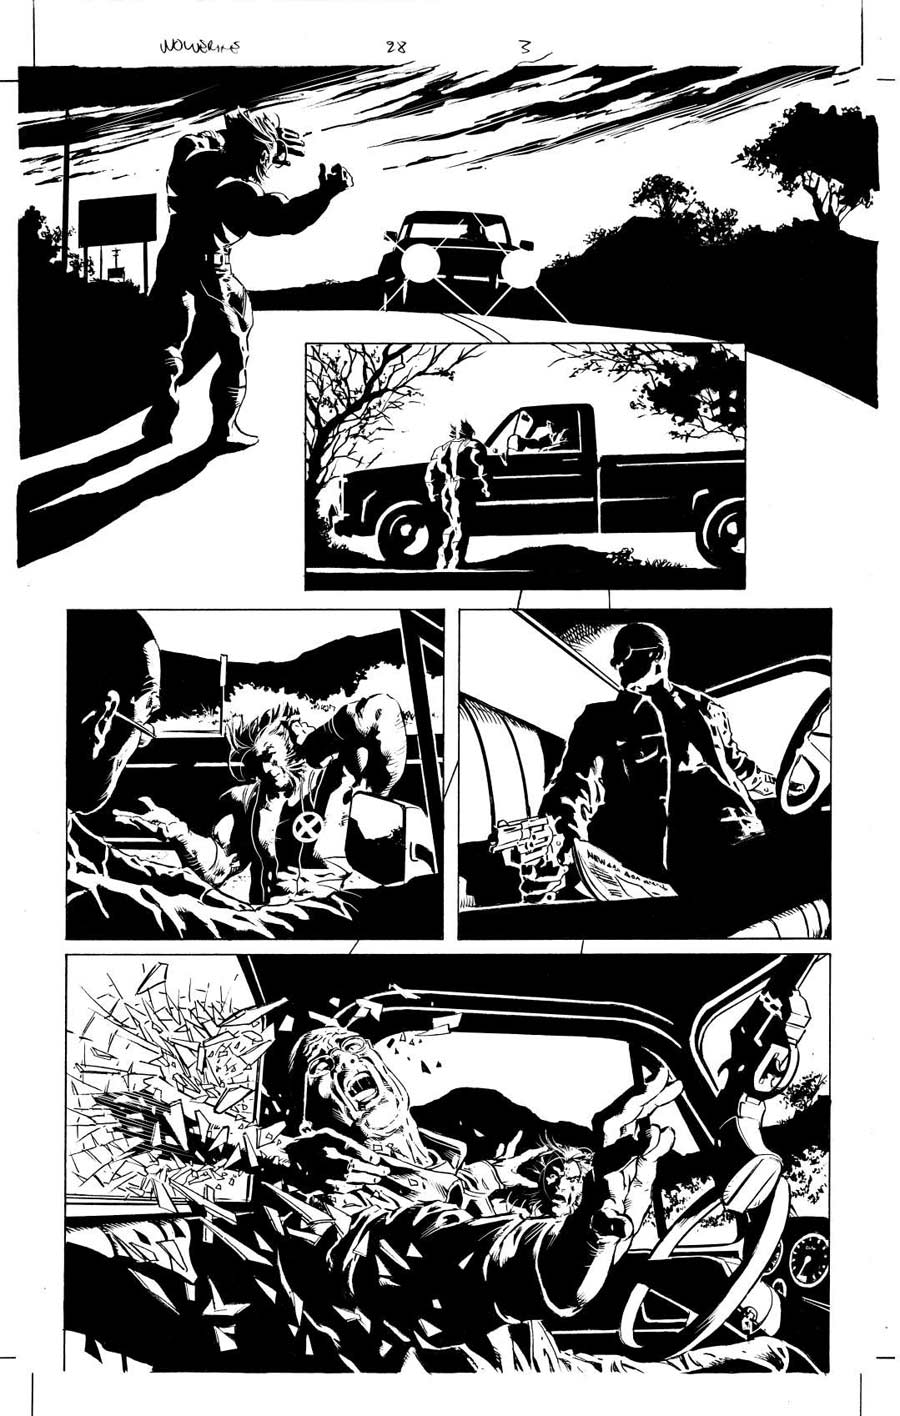 Wolverine Origins #28 page 3